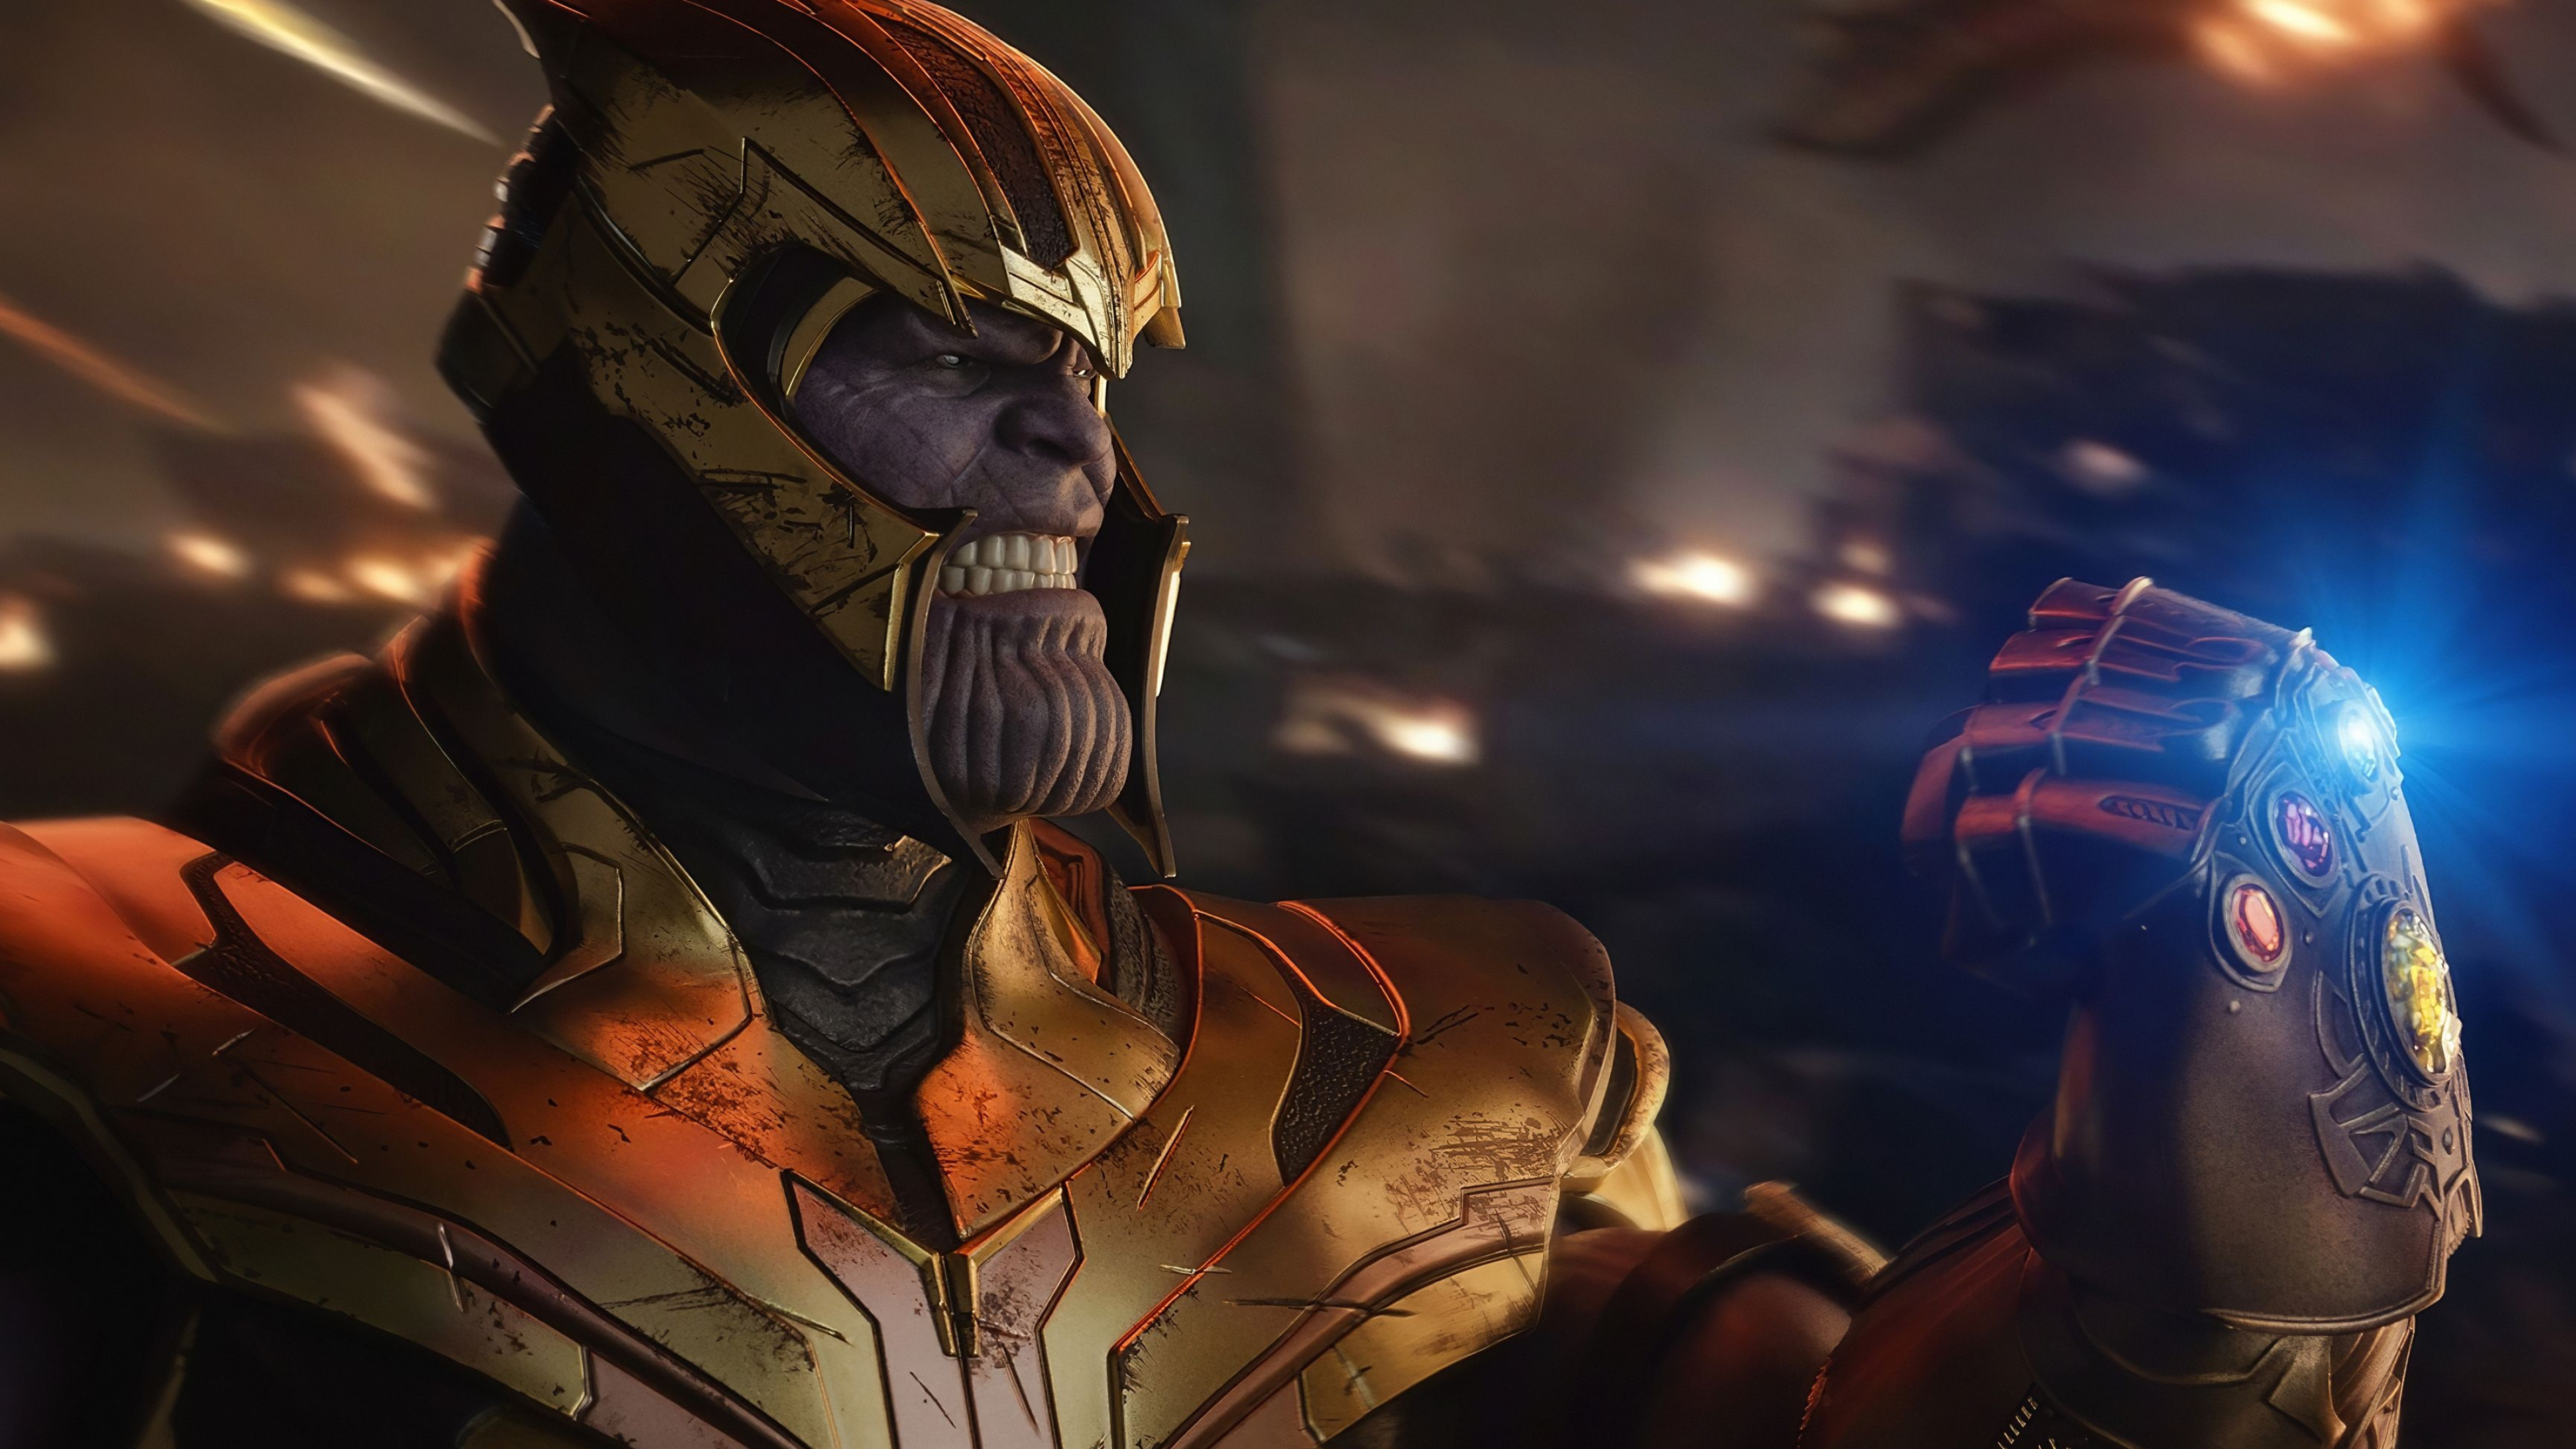 Infinity Gauntlet 2020 art, Thanos wallpapers, 3840x2160 4K Desktop